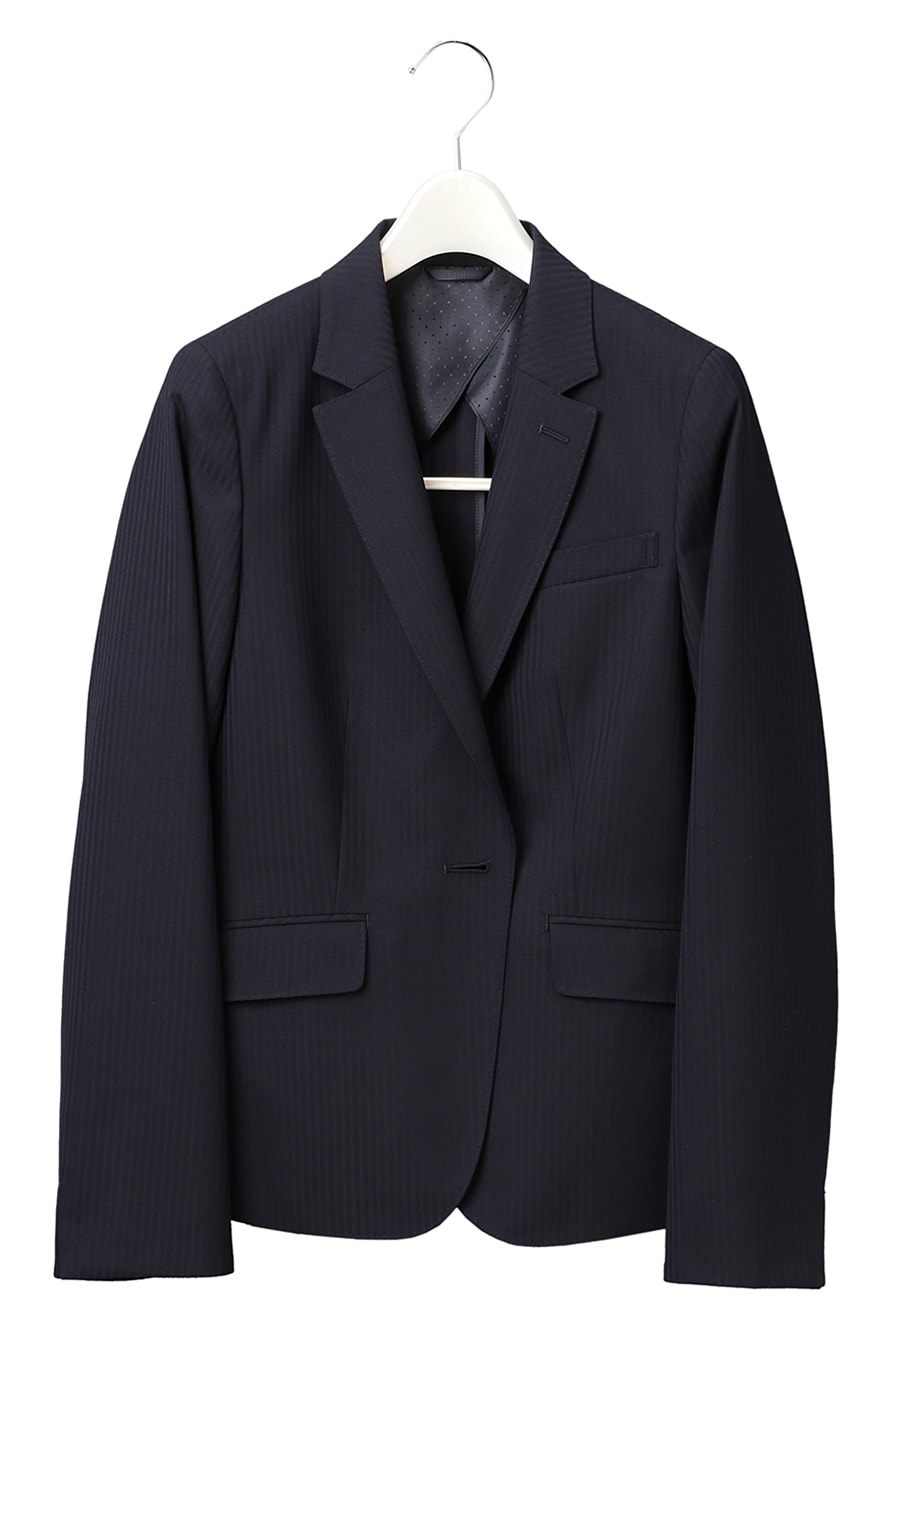 レディーススーツハンガー Ladyhan900 紳士服 スーツ販売数世界no 1 洋服の青山 公式通販